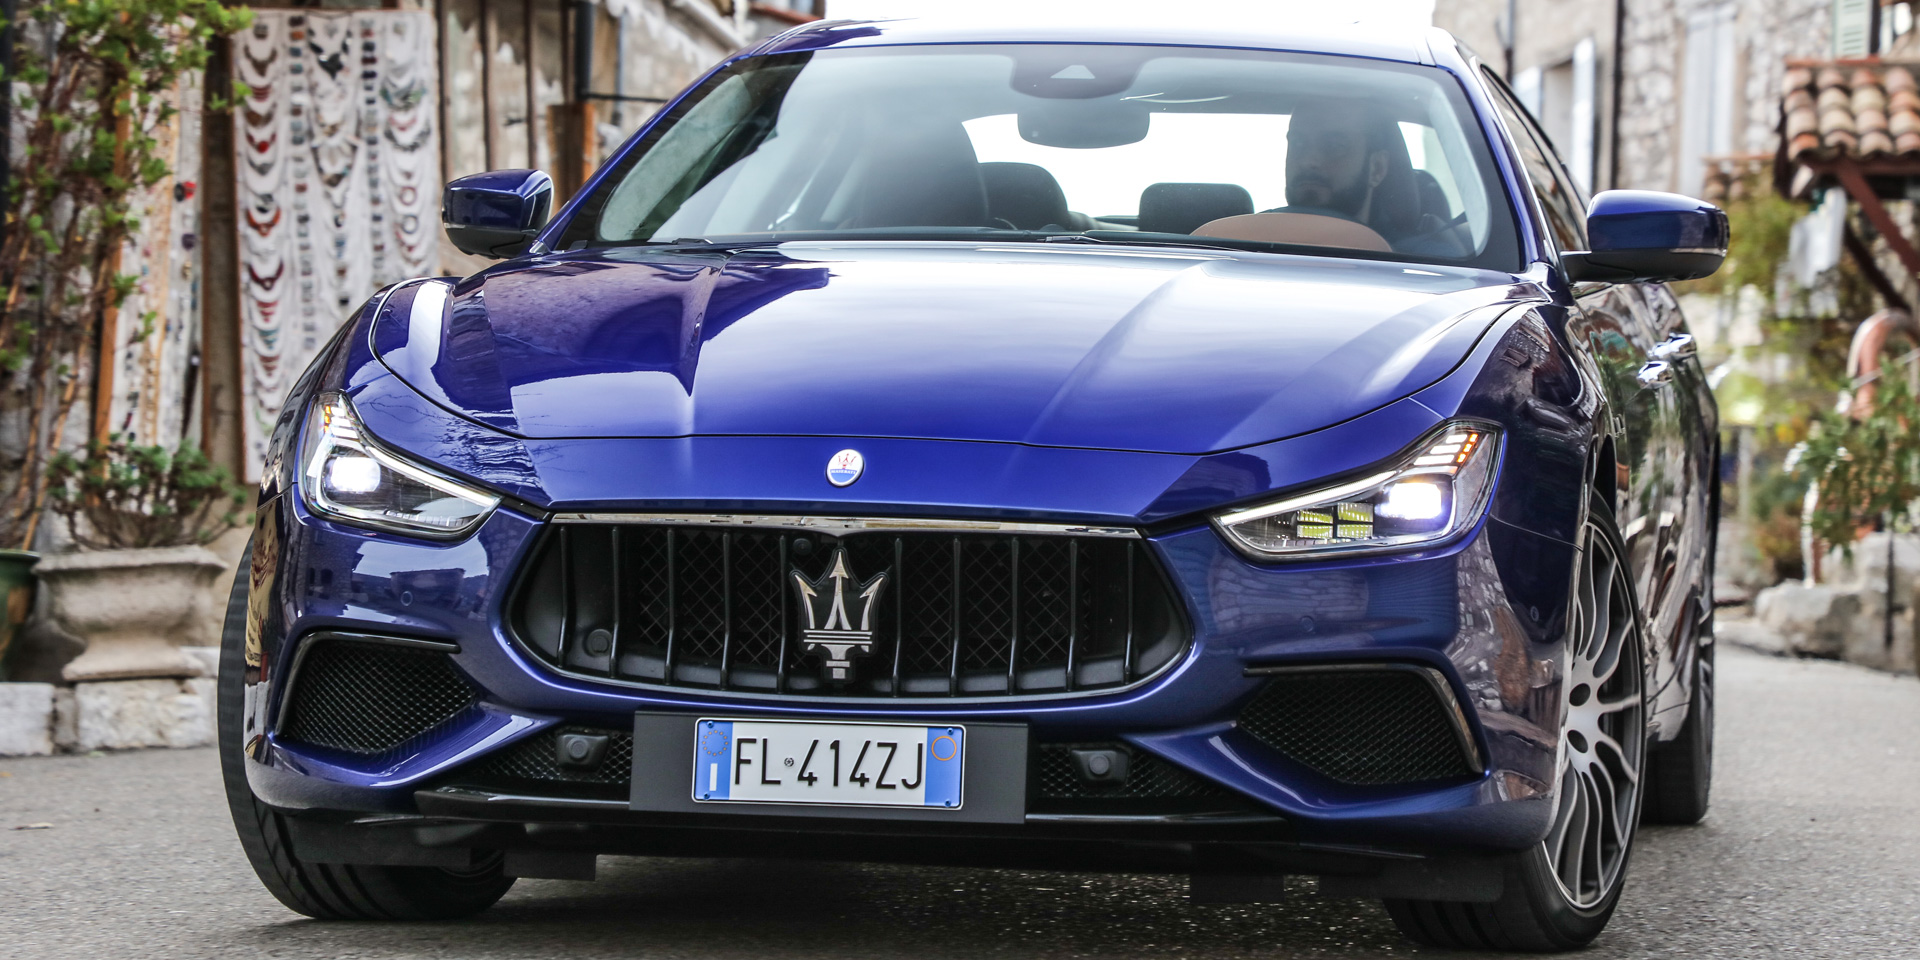 Η Maserati στη νέα εποχή!